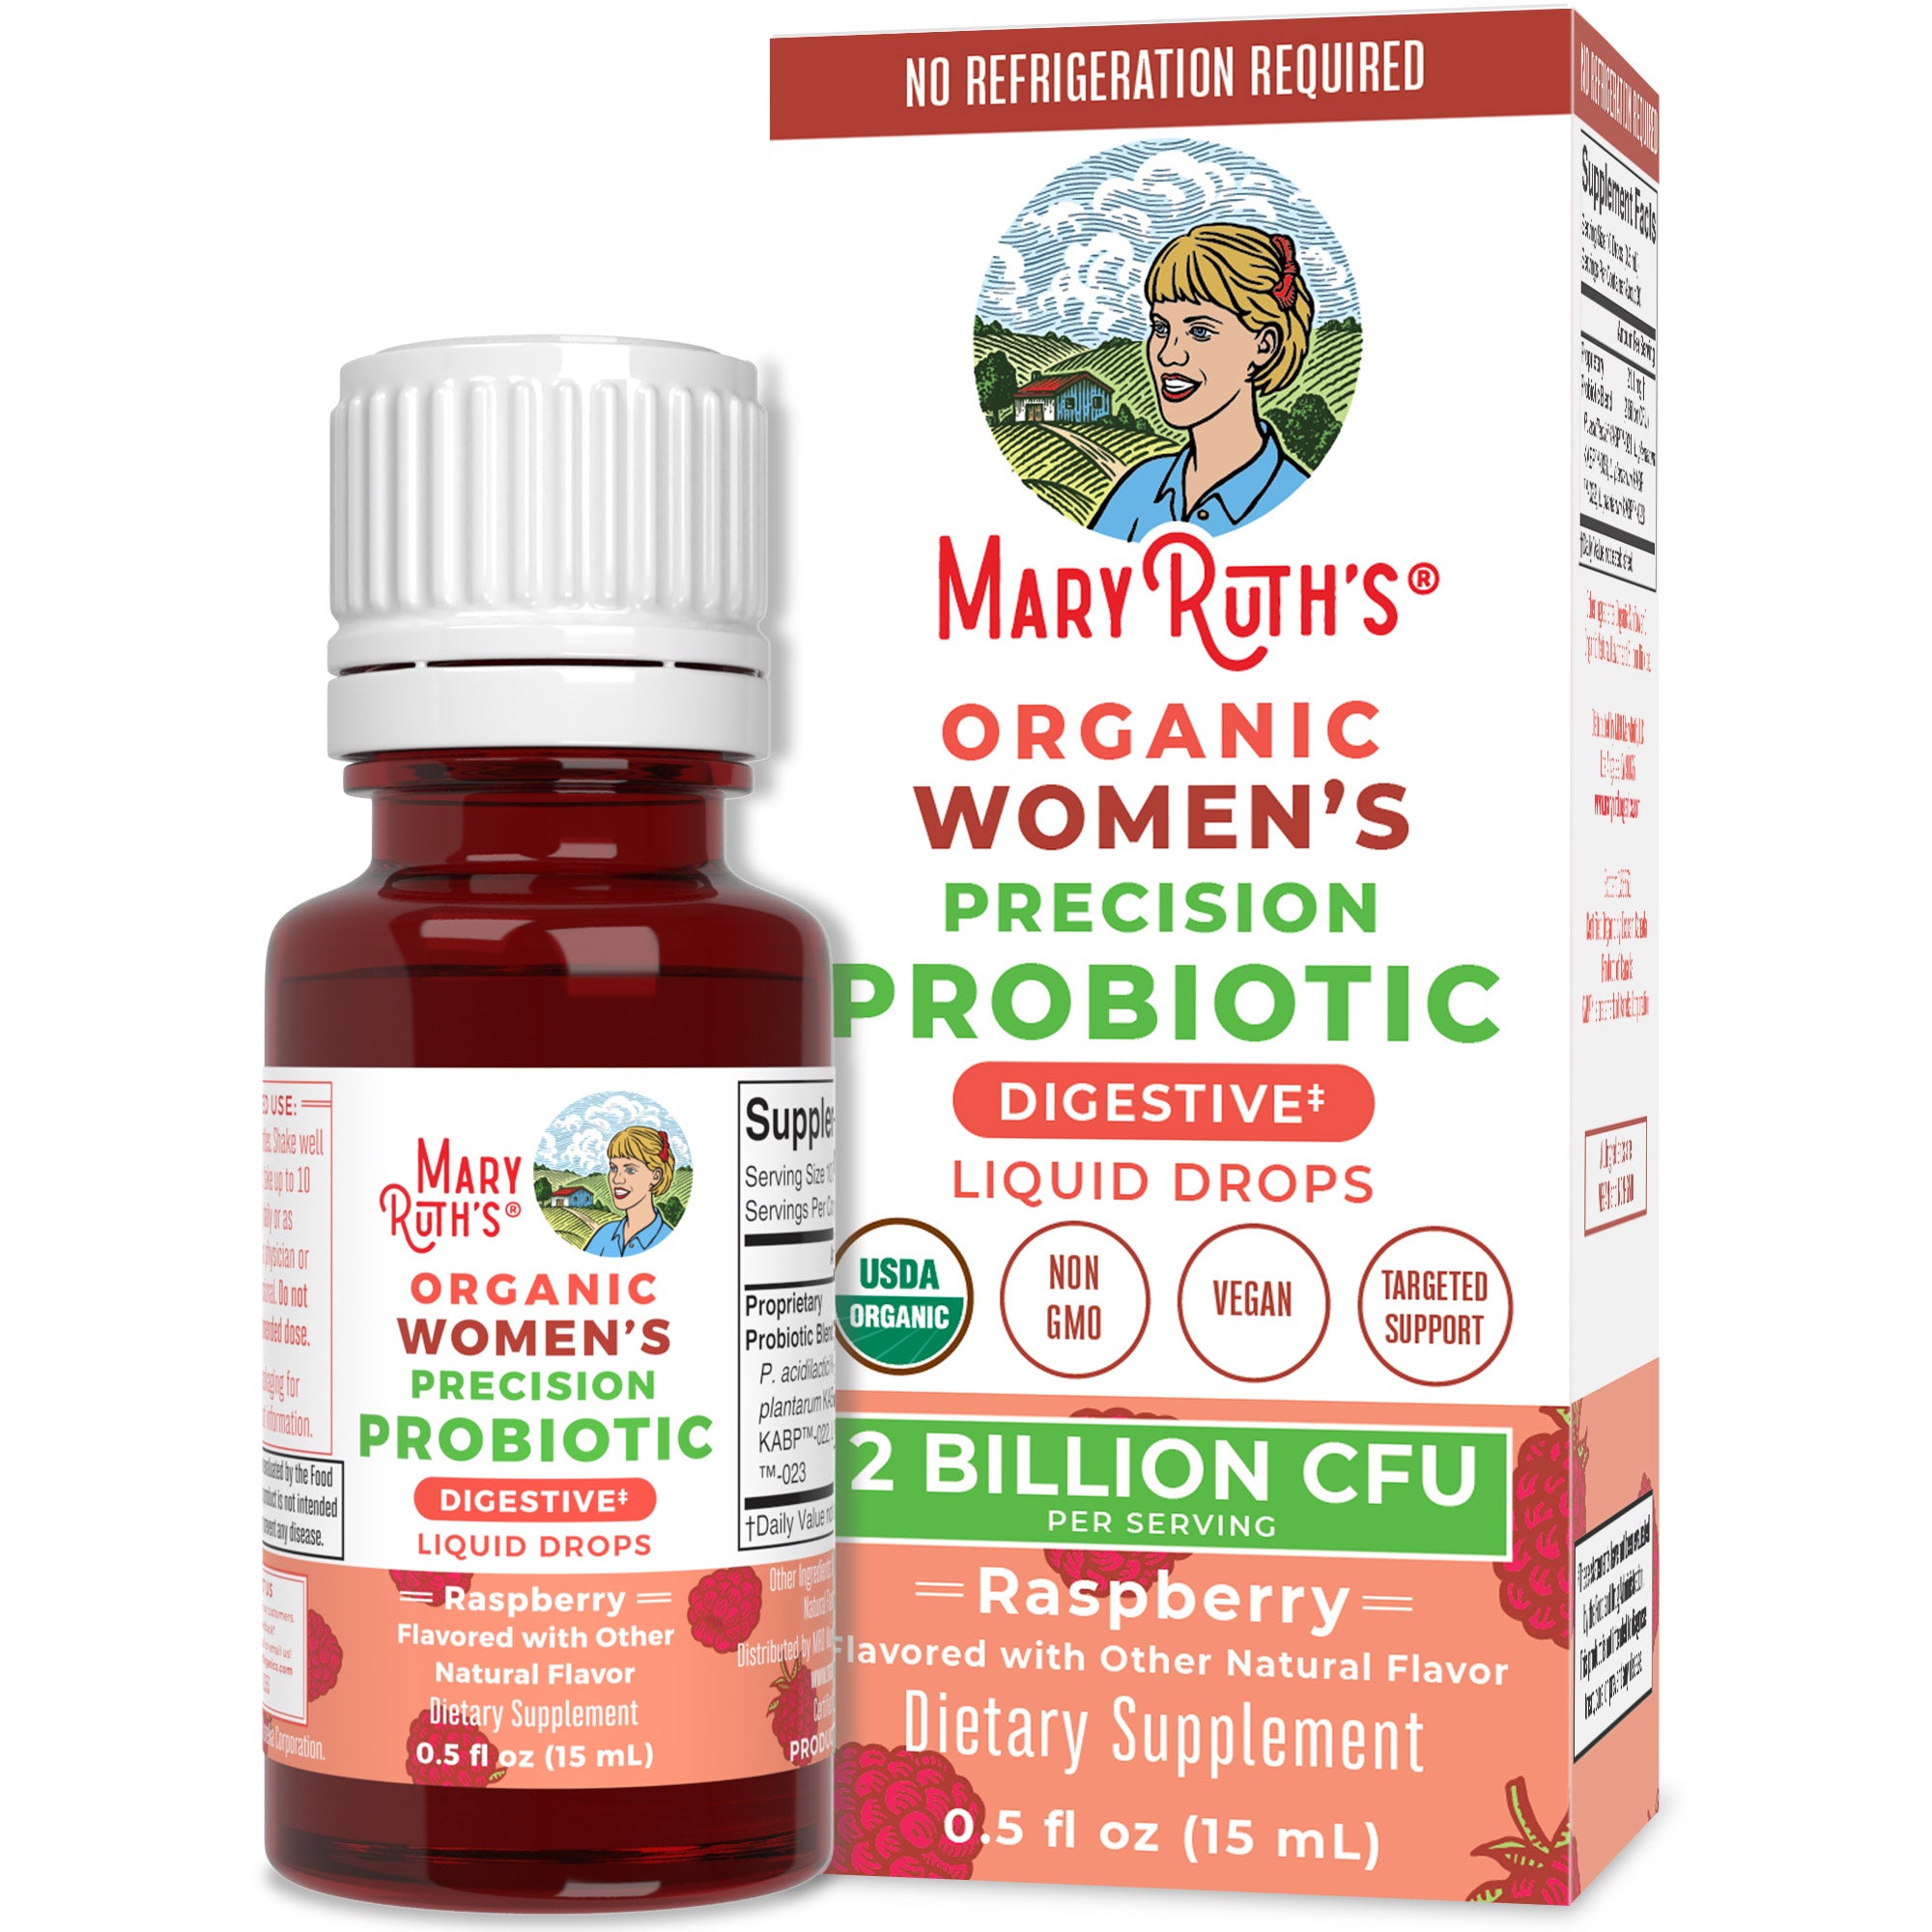 Organic Women's Precision Probiotic Digestive Liquid Drops